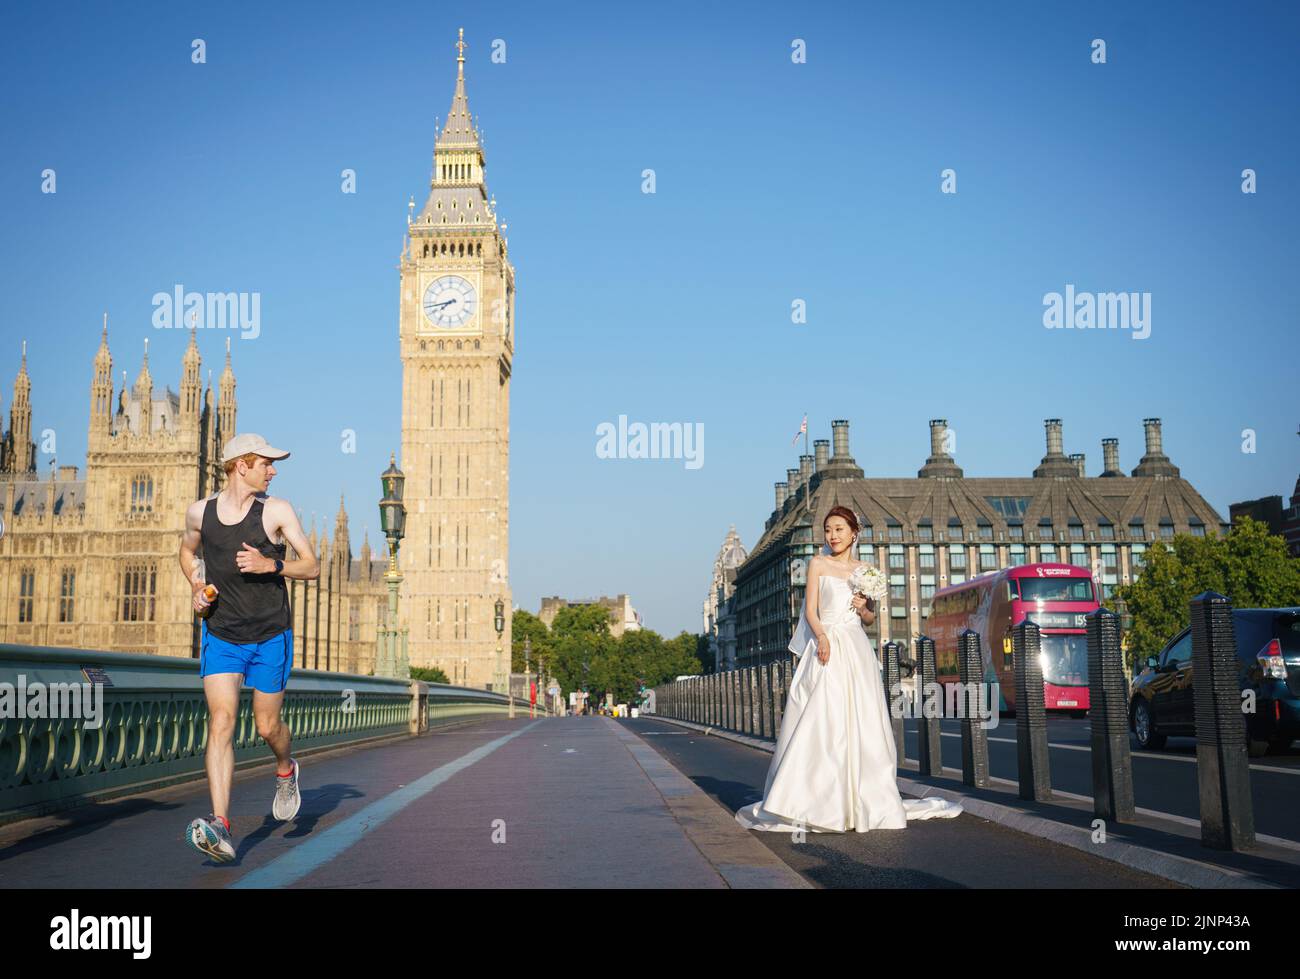 Une mariée pose pour des portraits de mariage tôt le matin sur le pont de Westminster, Londres, alors qu'une sécheresse a été déclarée pour certaines parties de l'Angleterre après l'été le plus sec depuis 50 ans. Date de la photo: Samedi 13 août 2022. Banque D'Images